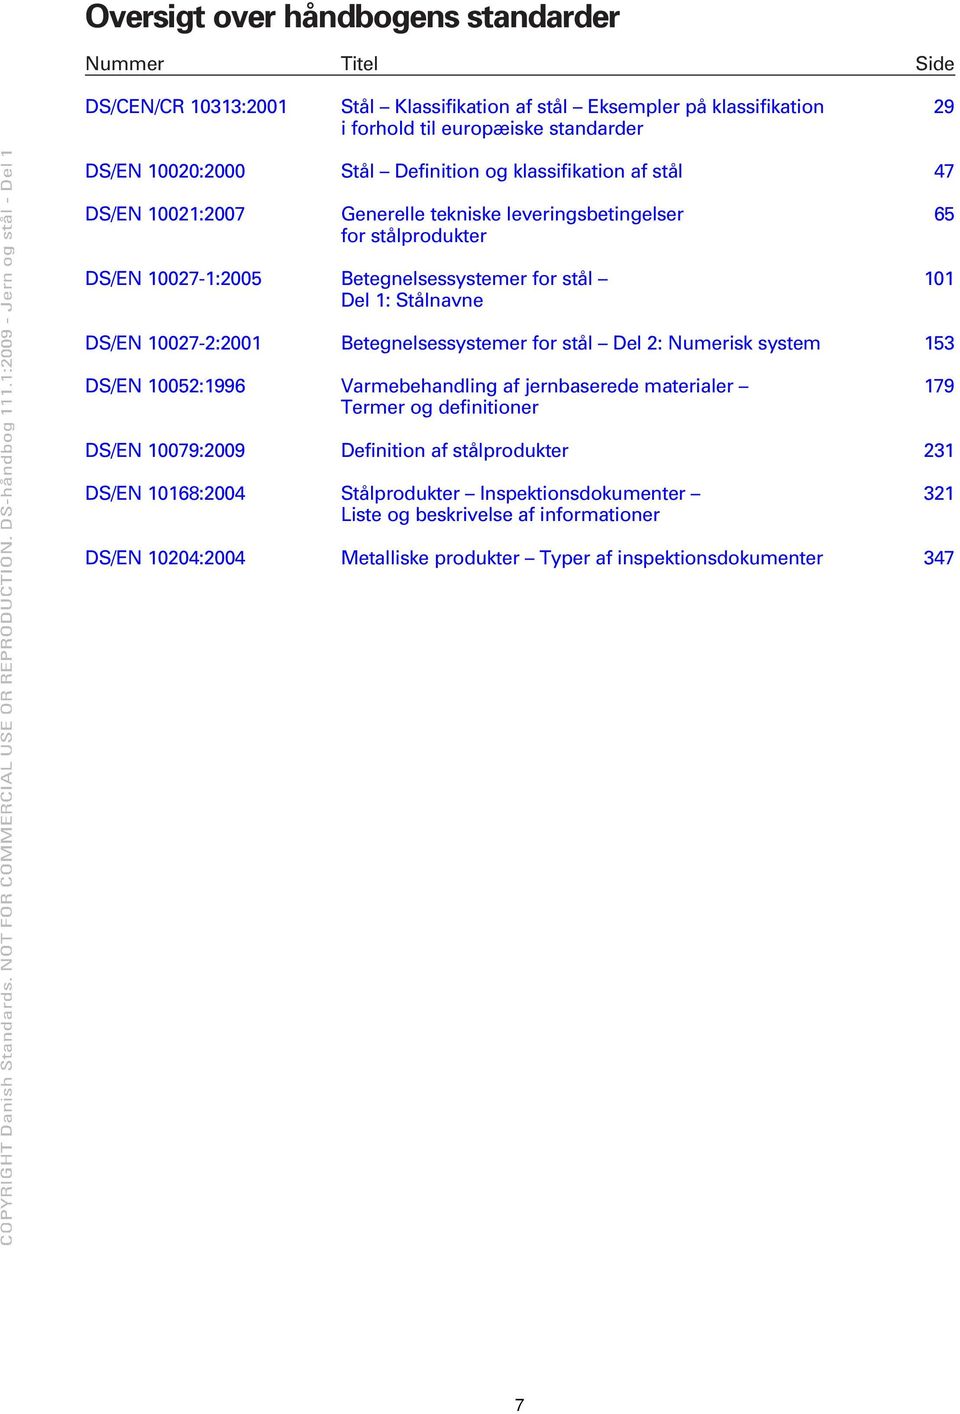 Stålnavne DS/EN 10027-2:2001 Betegnelsessystemer for stål Del 2: Numerisk system 153 DS/EN 10052:1996 Varmebehandling af jernbaserede materialer 179 Termer og definitioner DS/EN 10079:2009